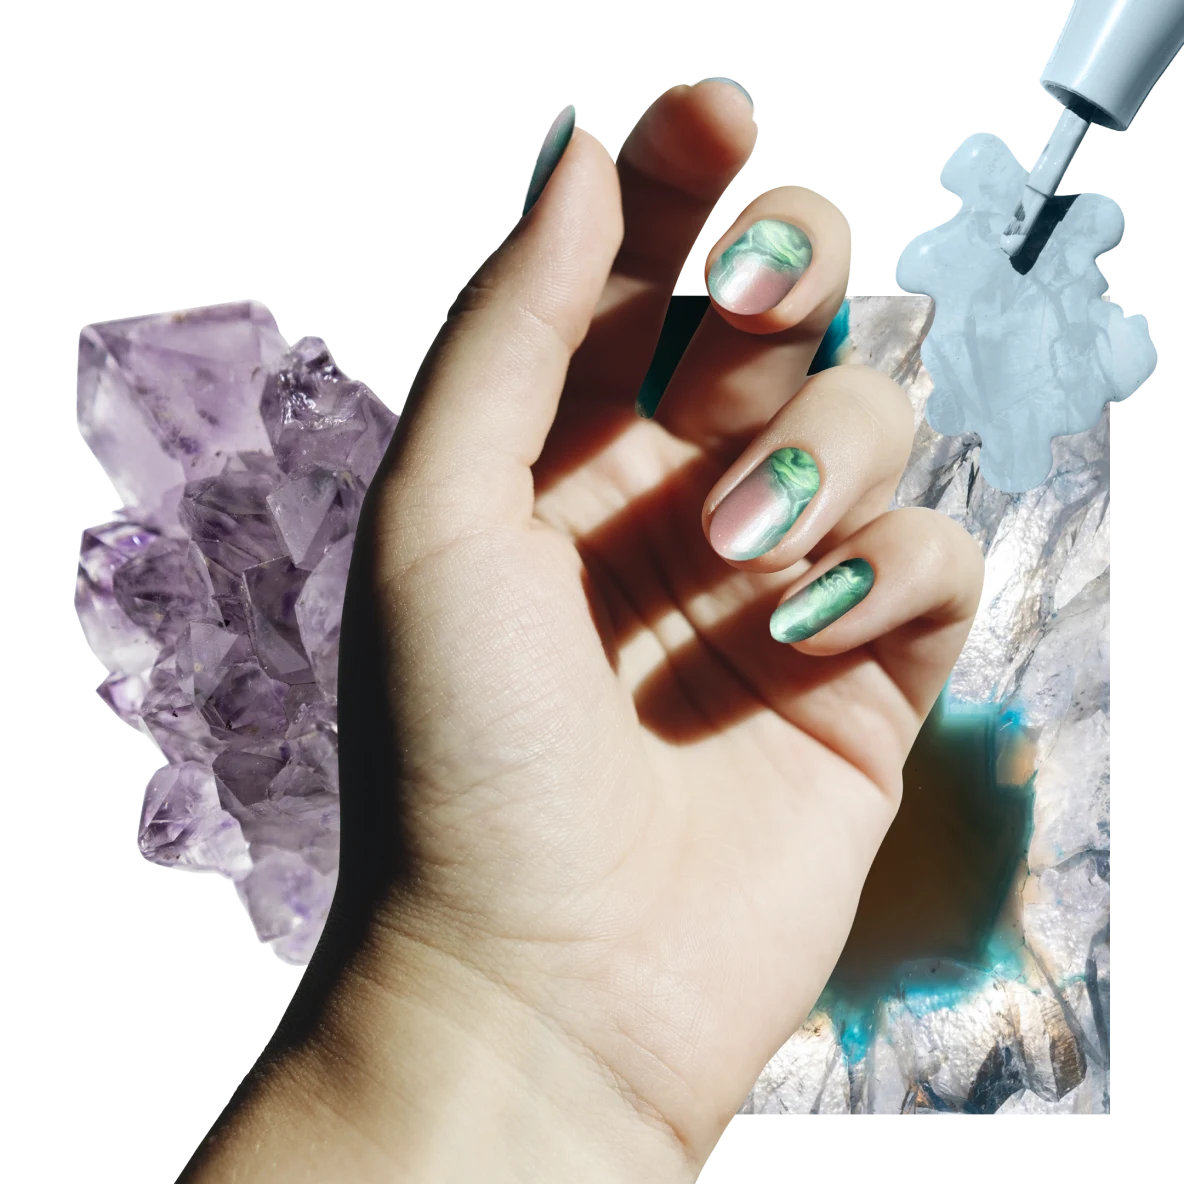 Eine weiße Hand liegt auf violetten und transparenten Kristallen. Rechts oben ist hellblauer Nagellack zu sehen.